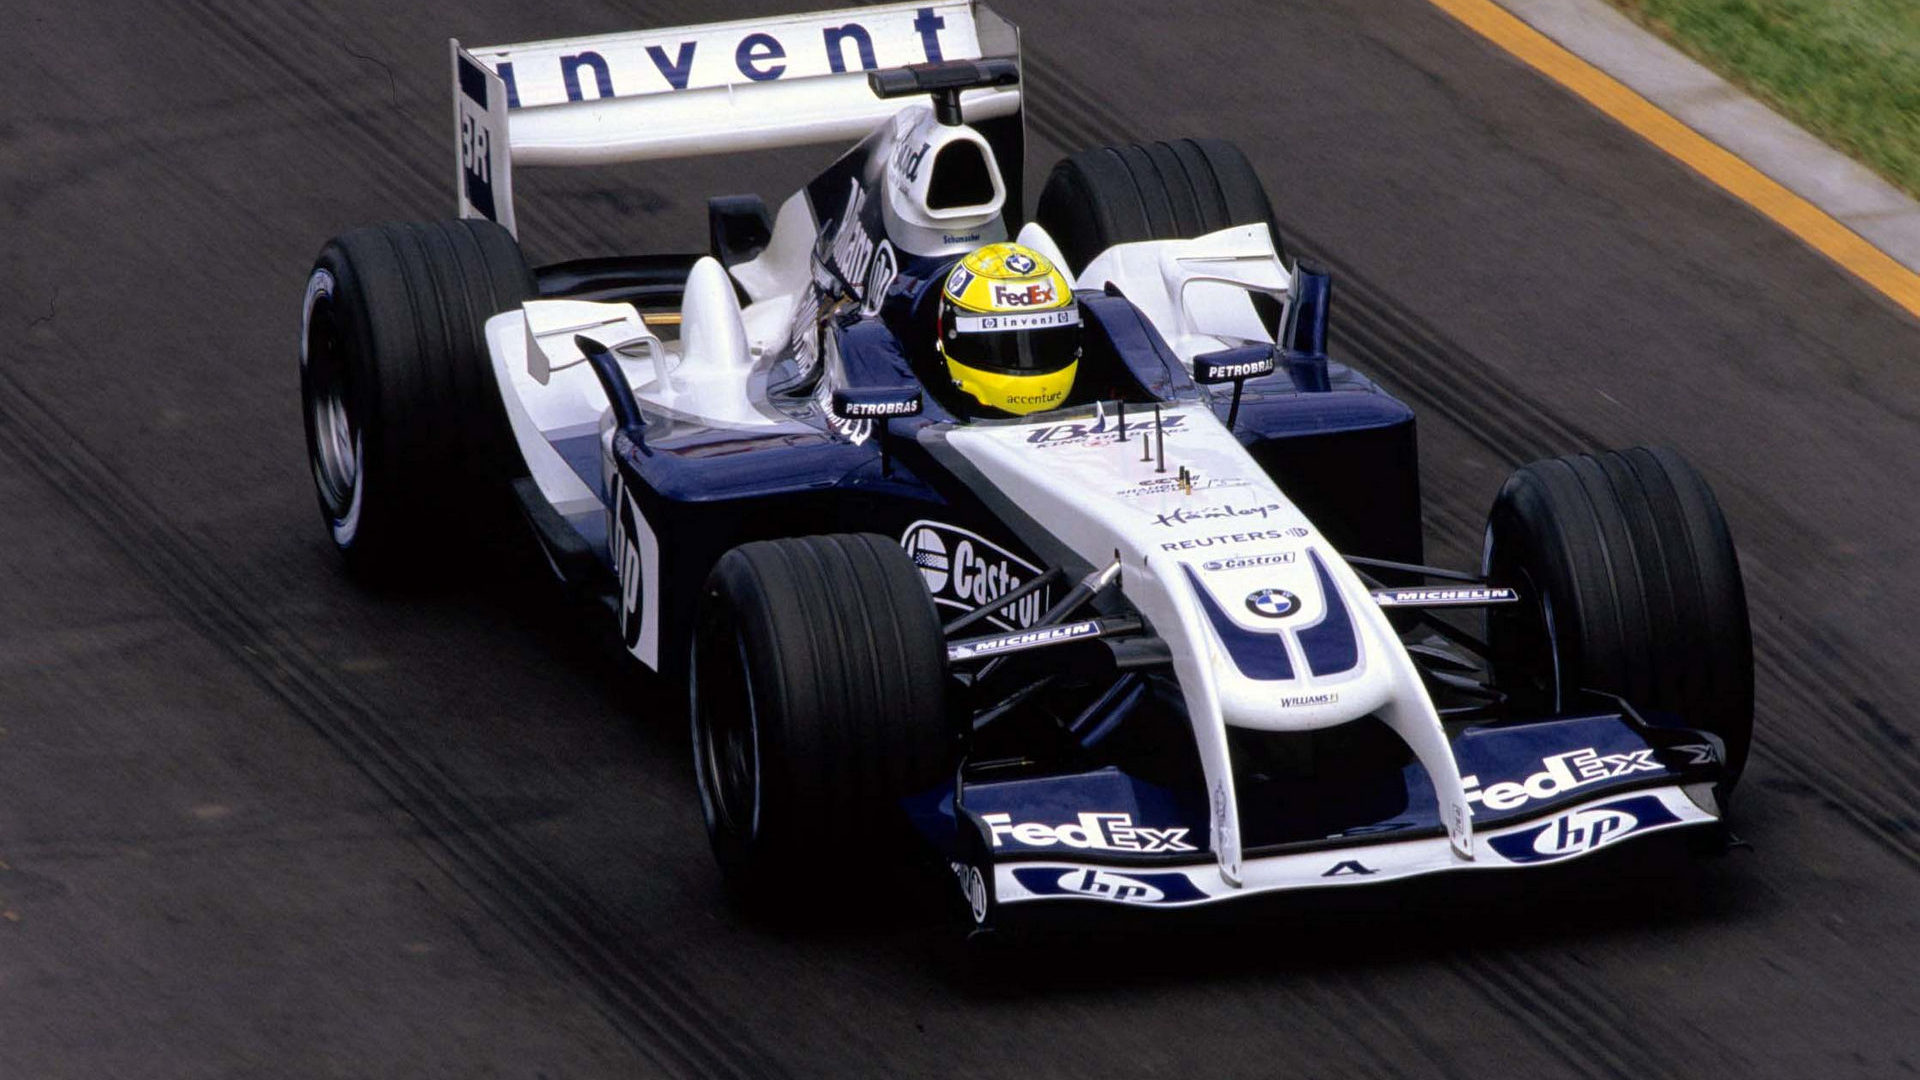 Ralf Schumacher One Image F1